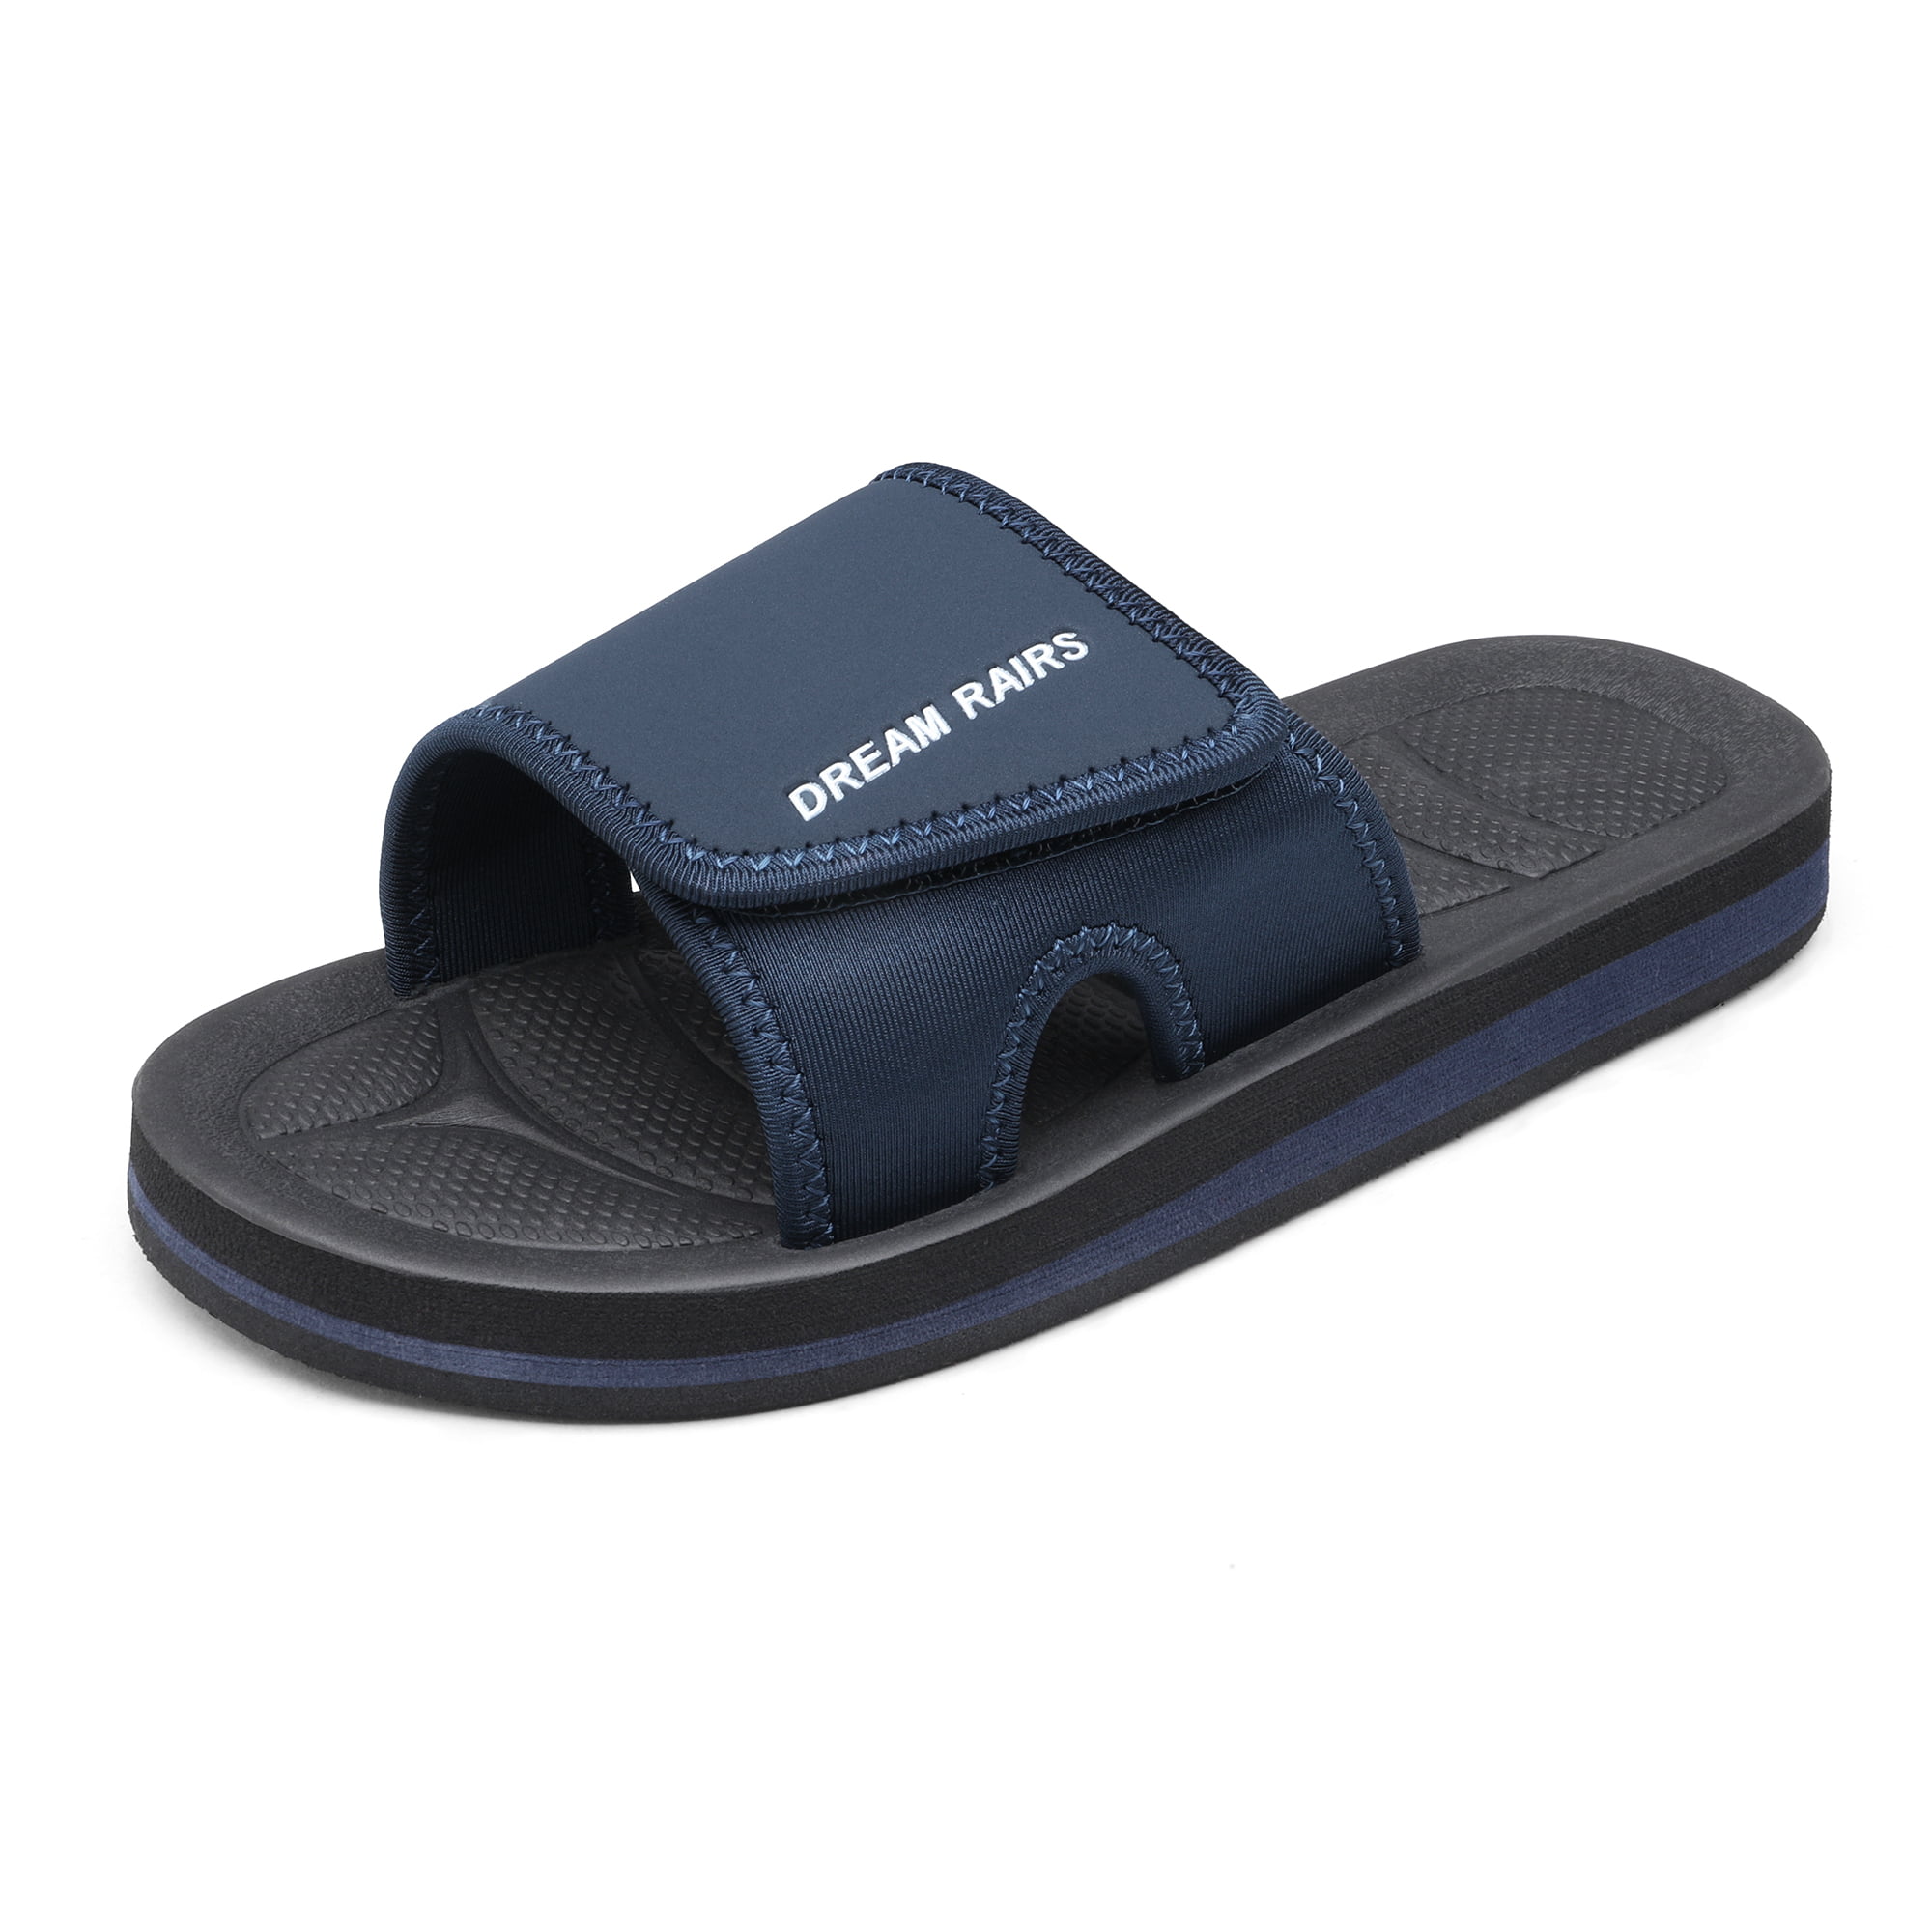 DREAM PAIRS Slides for Women,Sport Athletic Comfort Slip on Summer Cute Slide Sandals